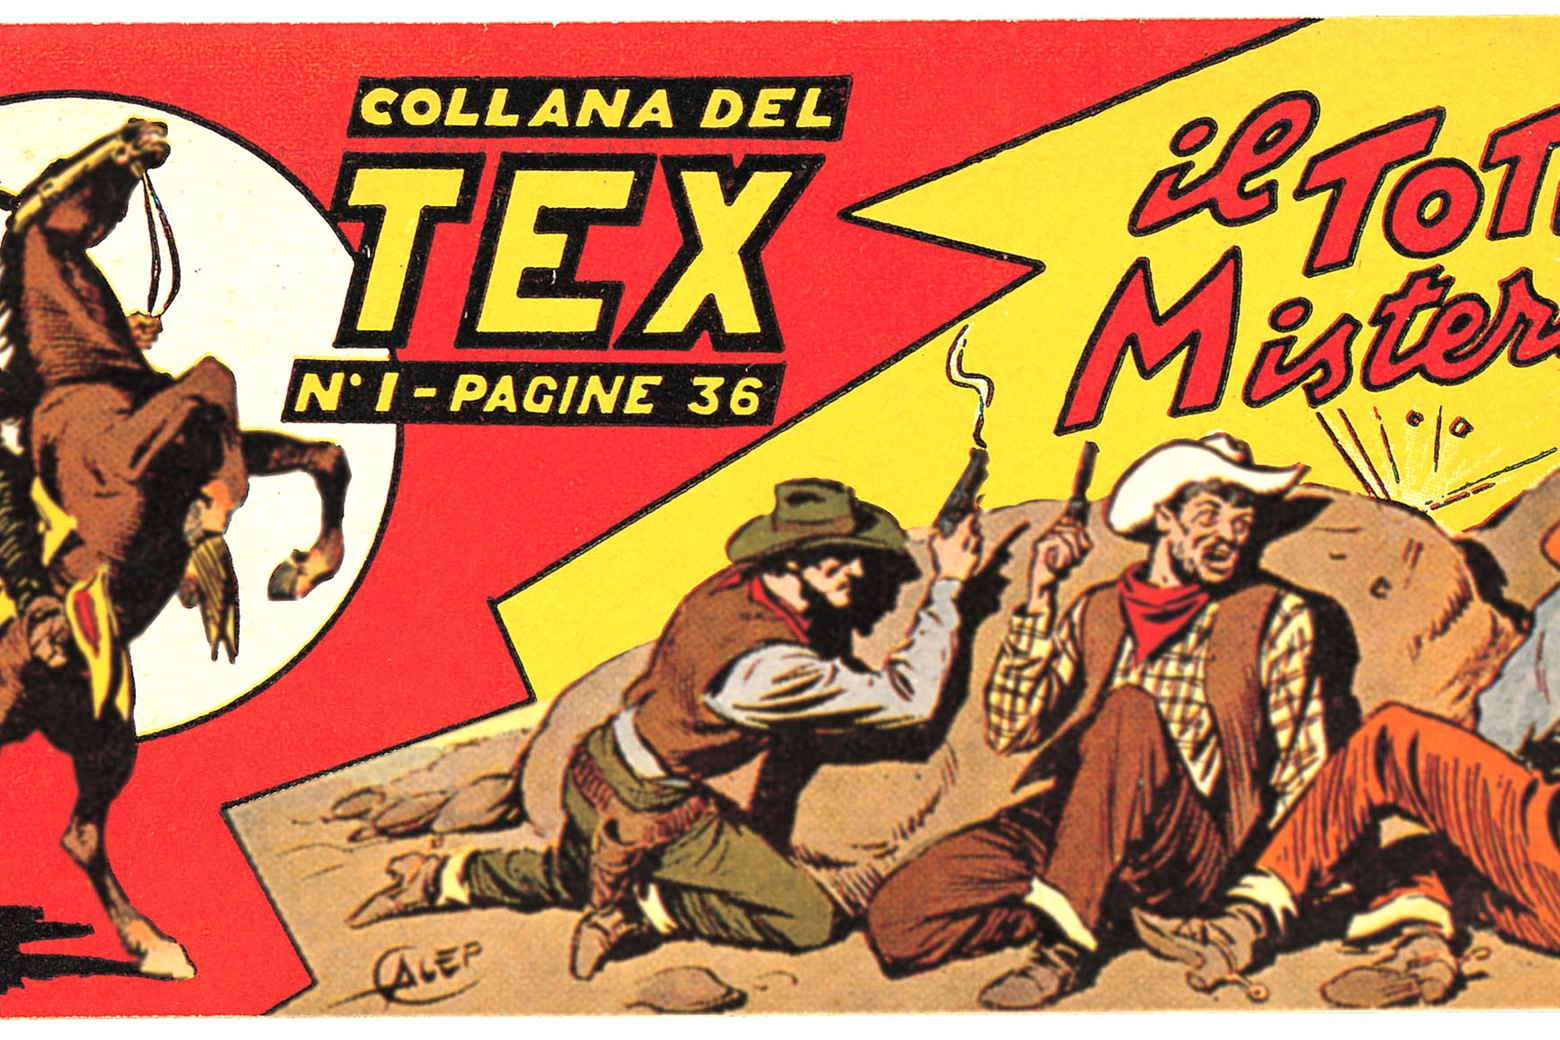 Una copertina di Tex, creato da Gianluigi Bonelli